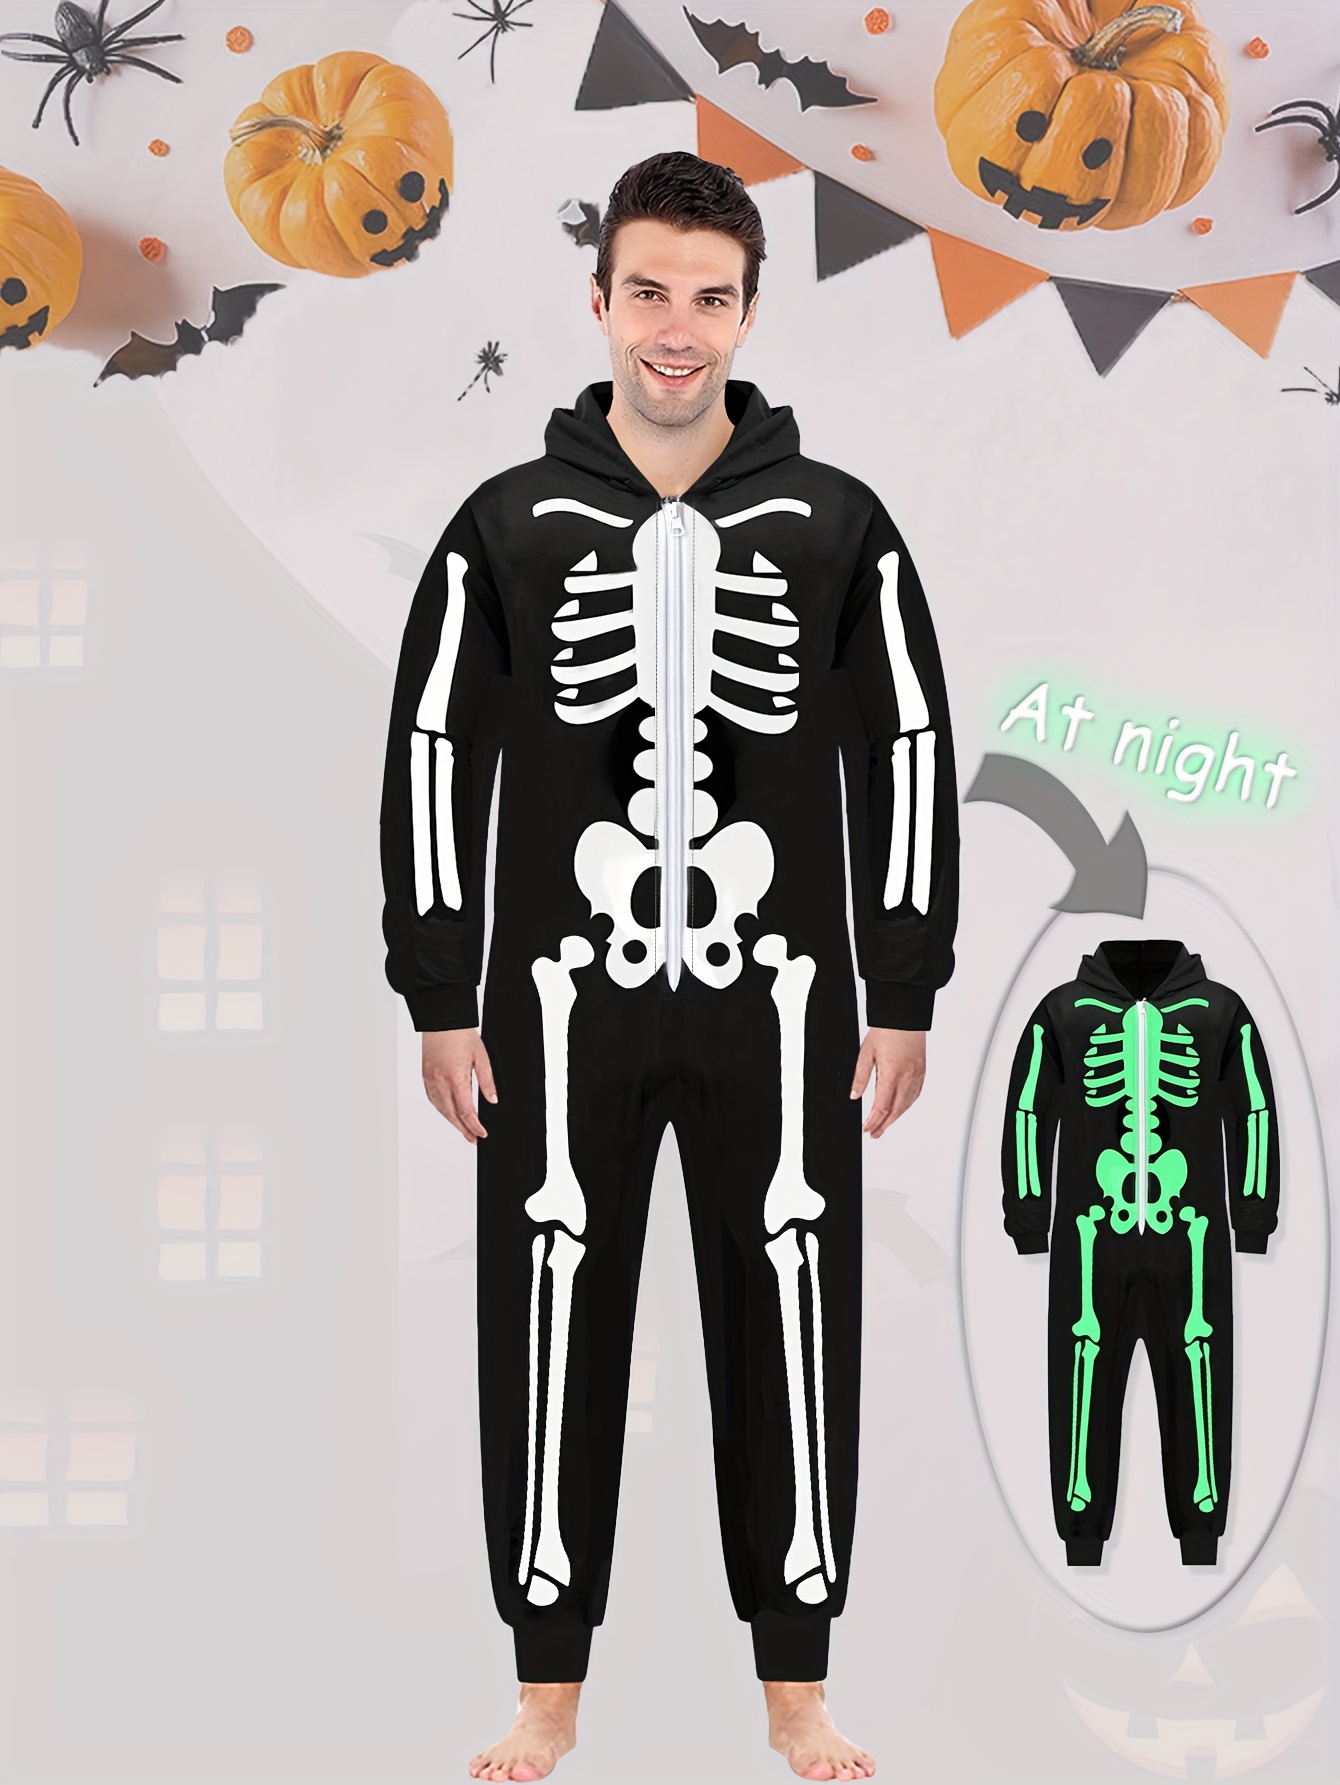 Scary Skeleton Men's Tuxedo Shirt Halloween Costume 